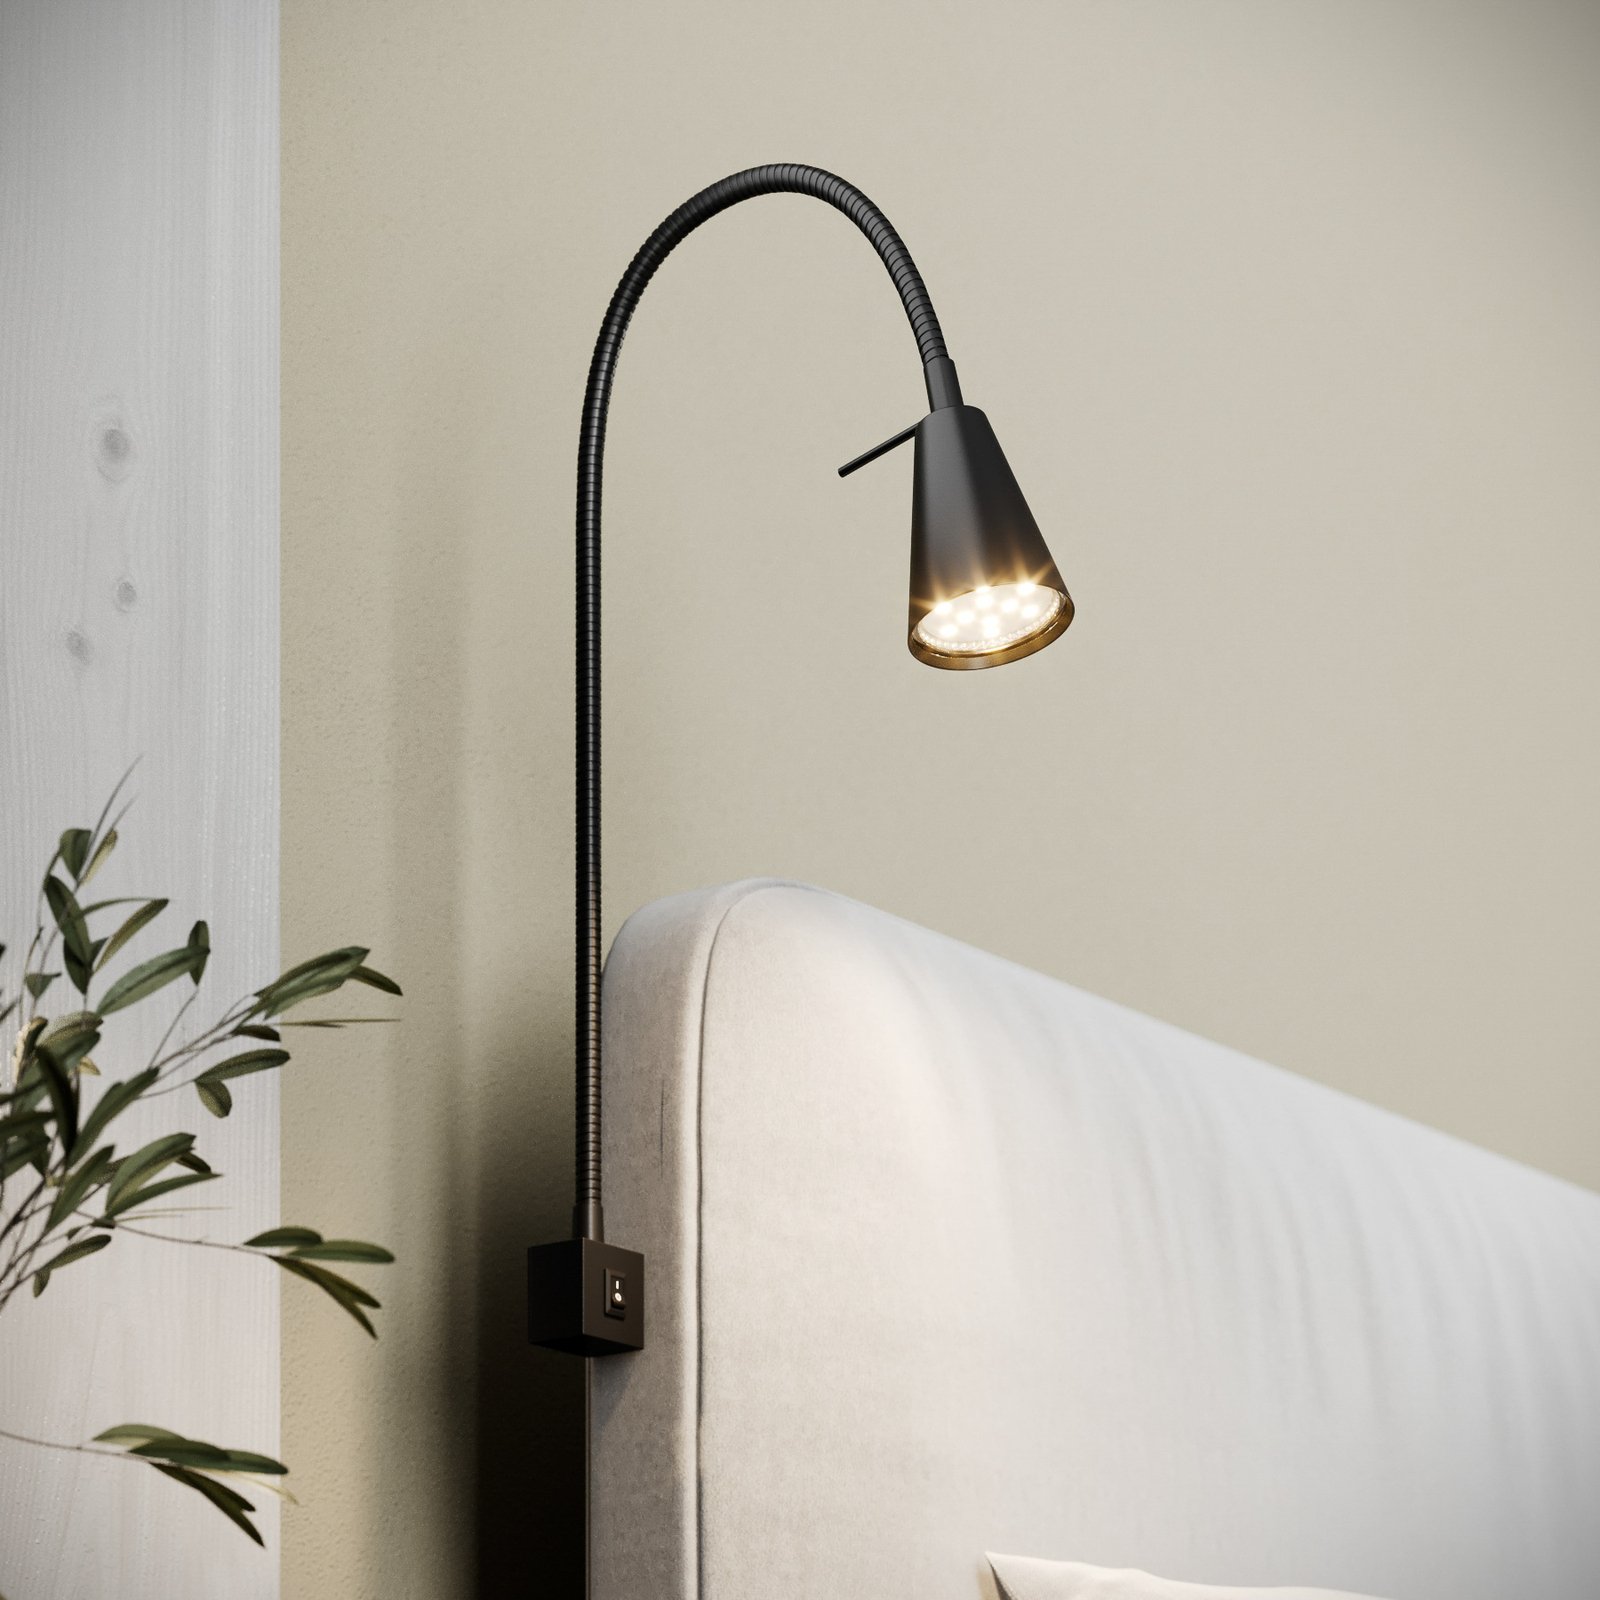 LED fali lámpa 2080 ágyra szerelhető, fekete színű